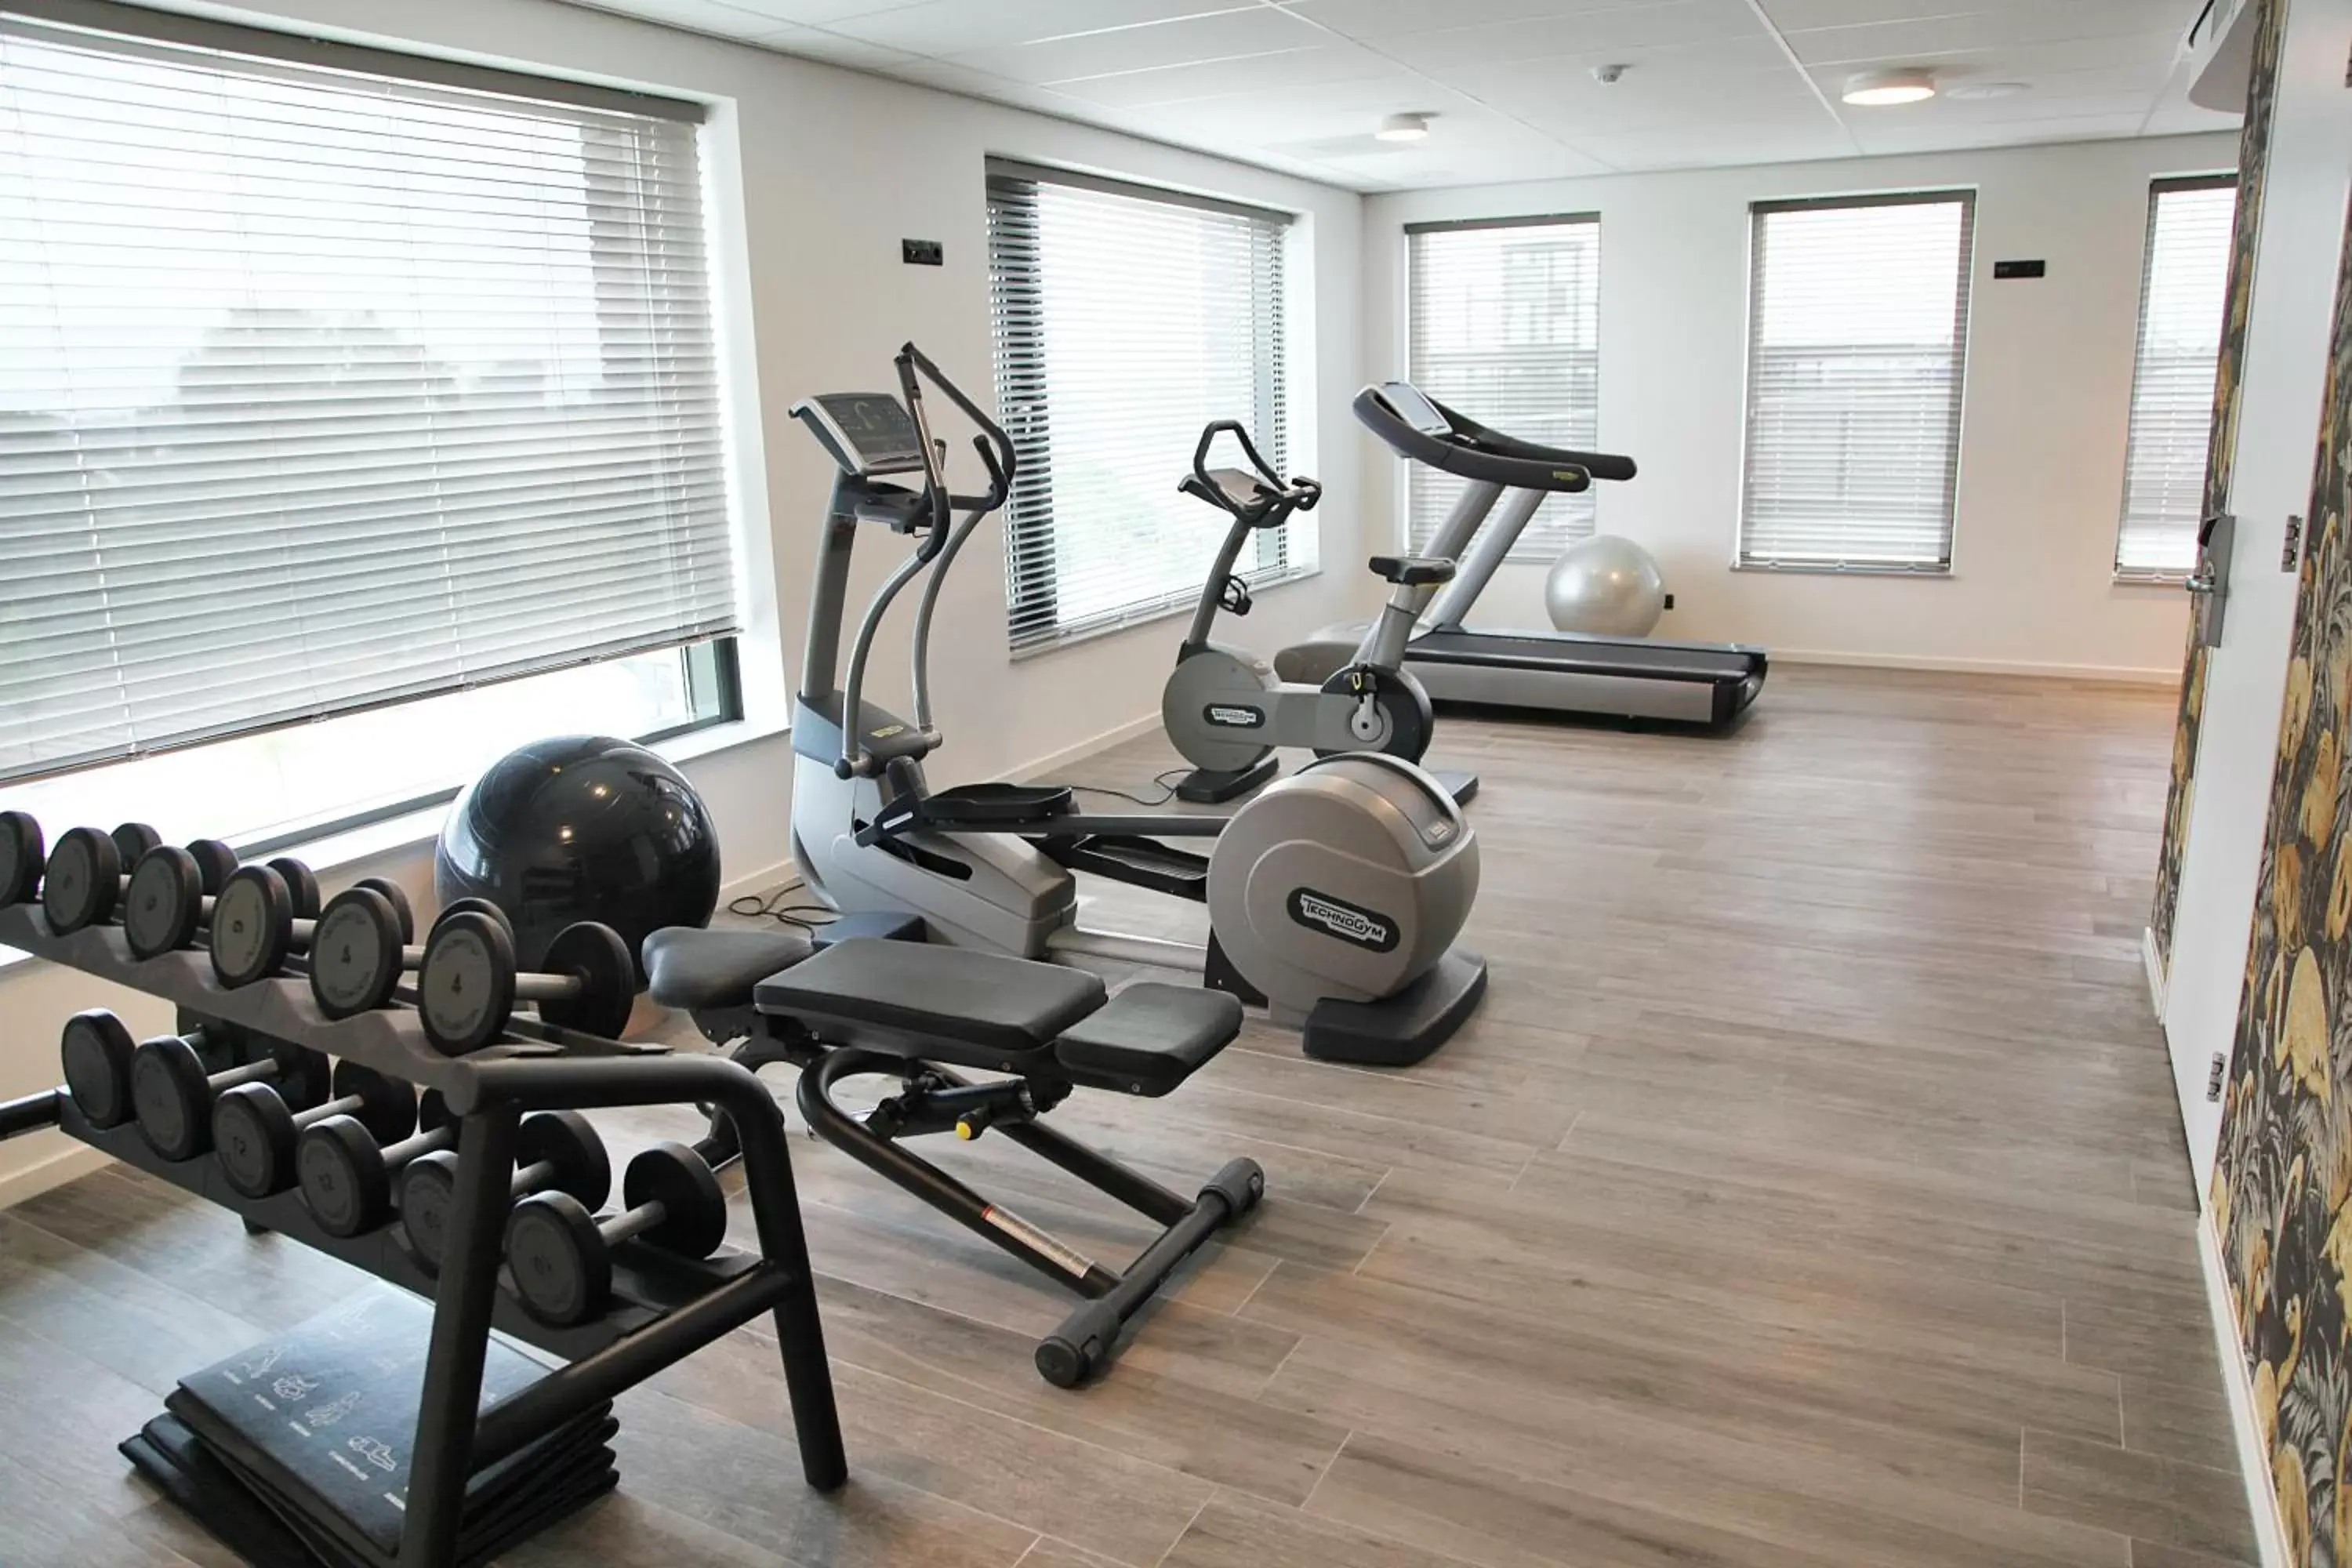 Fitness centre/facilities, Fitness Center/Facilities in Van der Valk Hotel Nijmegen-Lent